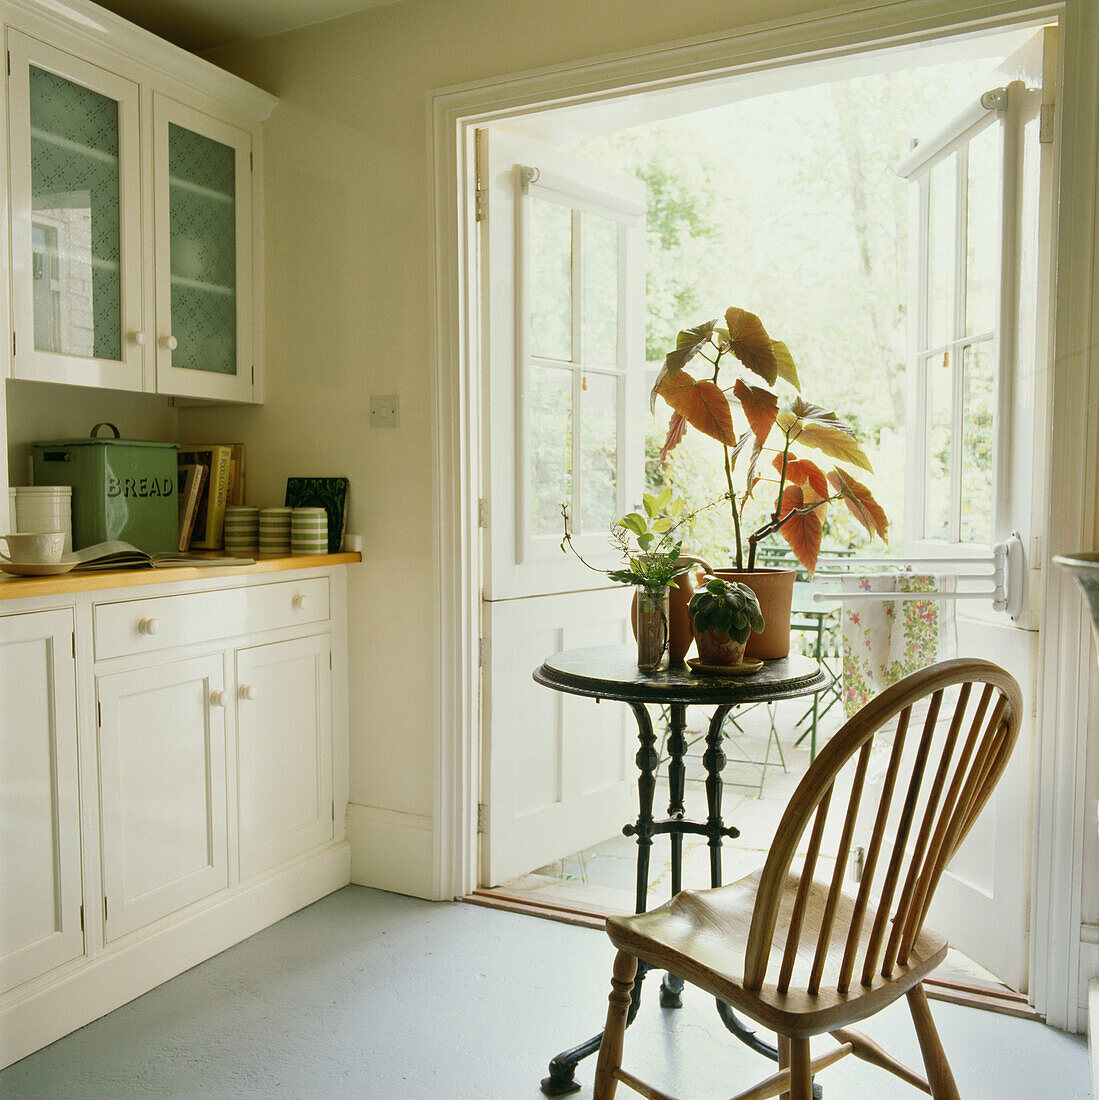 Bemalte Holzküchenzeile im Landhausstil mit offener Glastür zum Garten